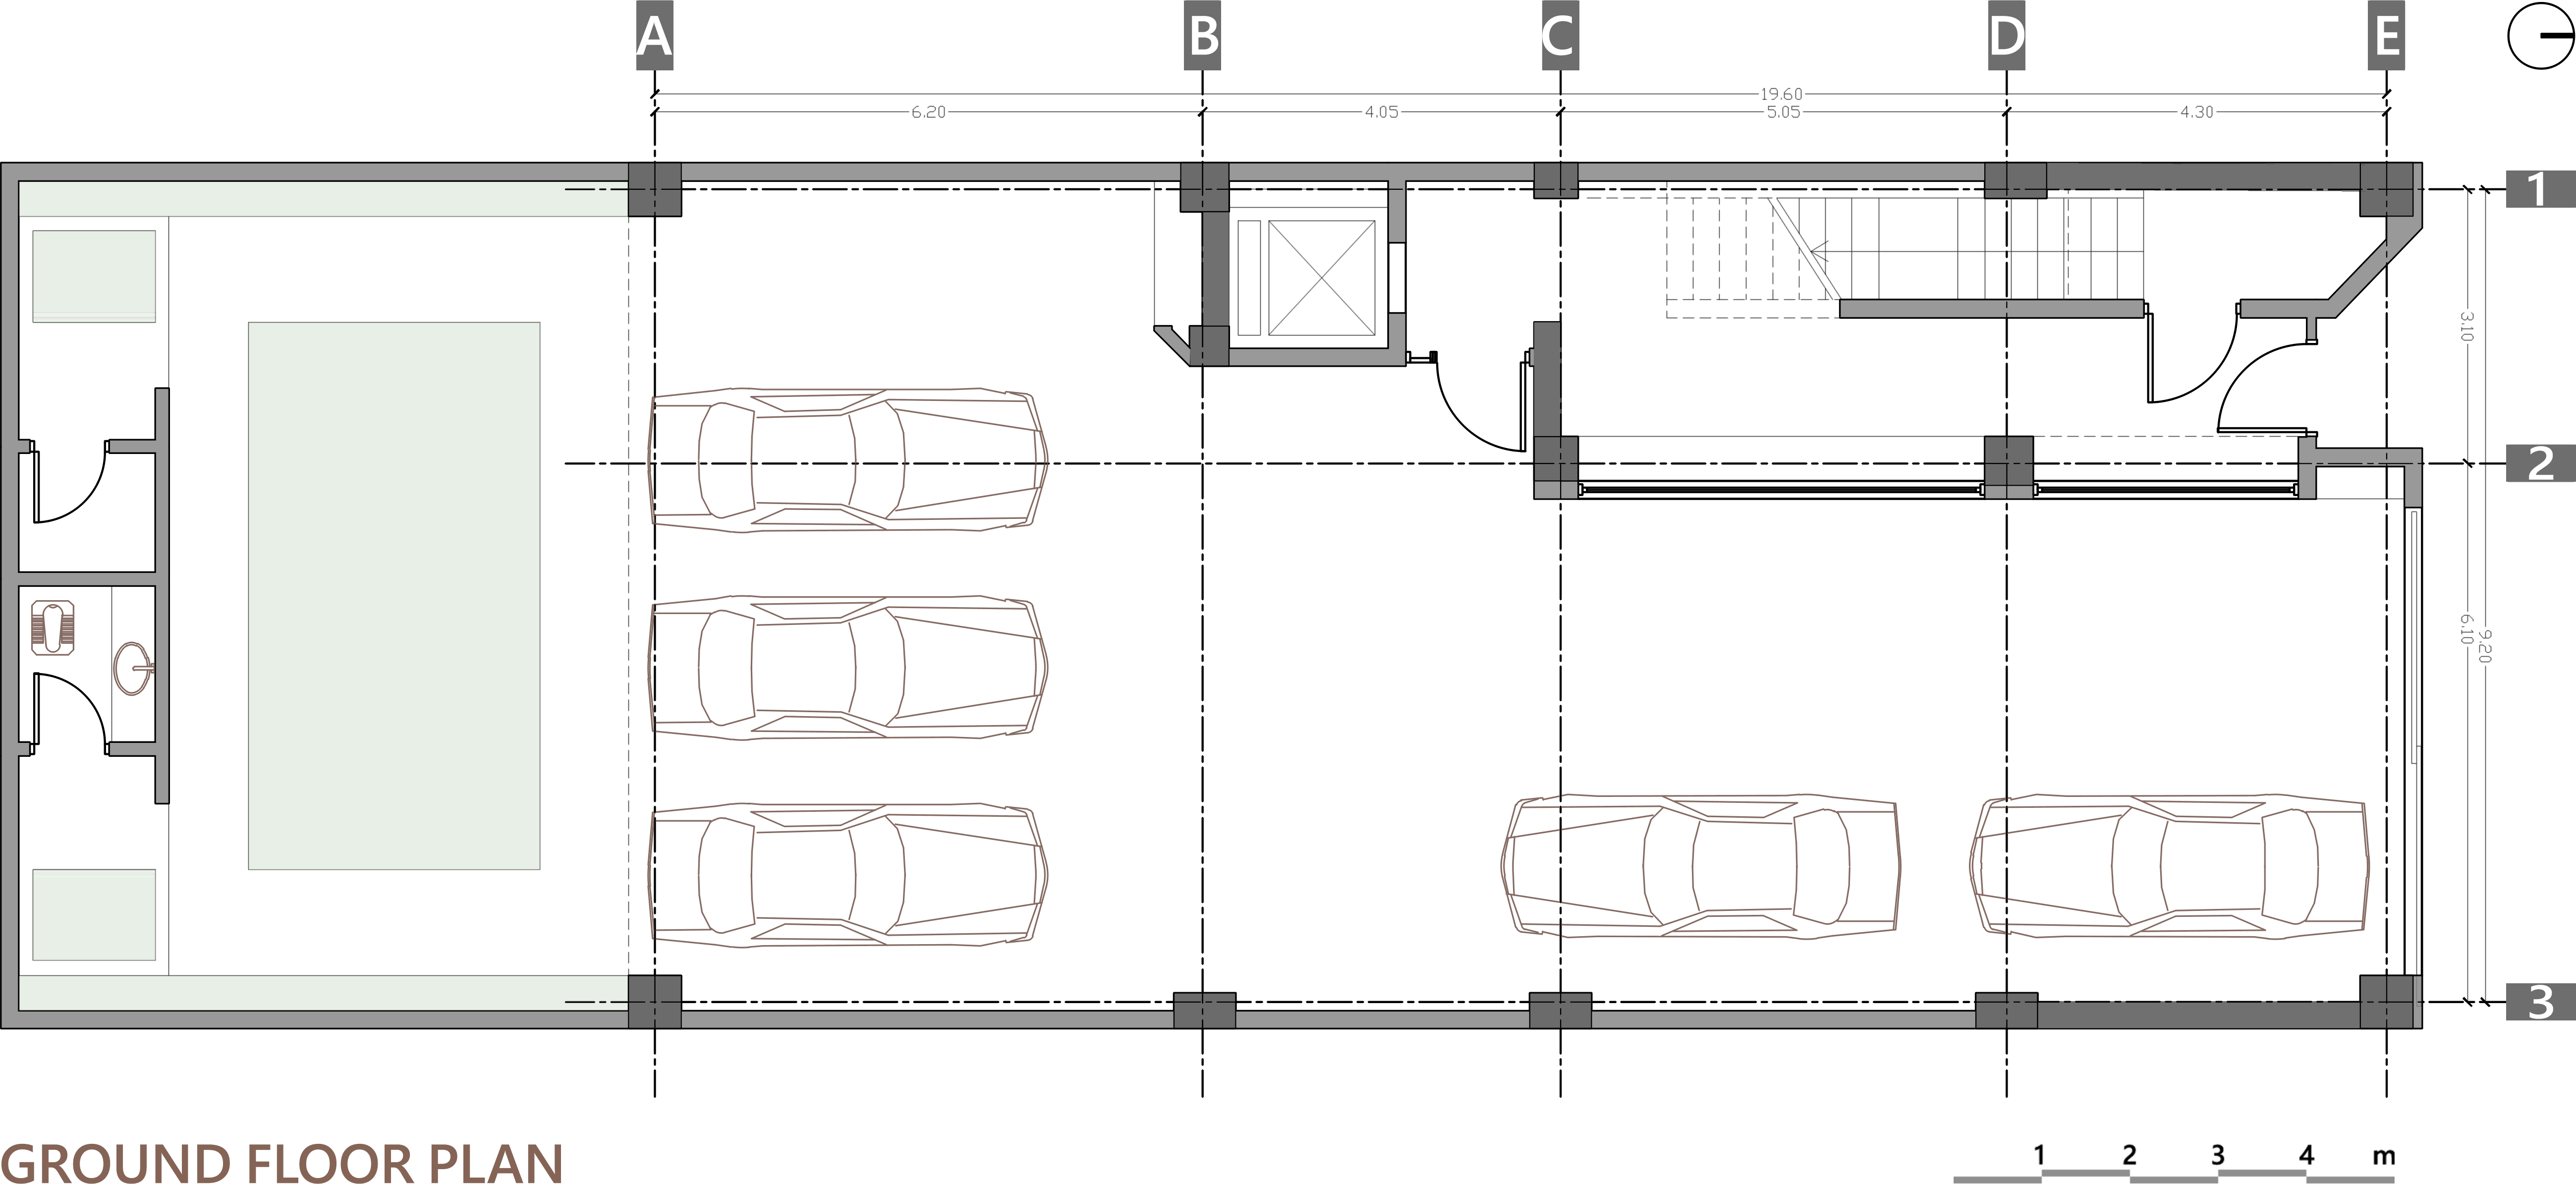 ground floor plan, 93 st. residentail aratment